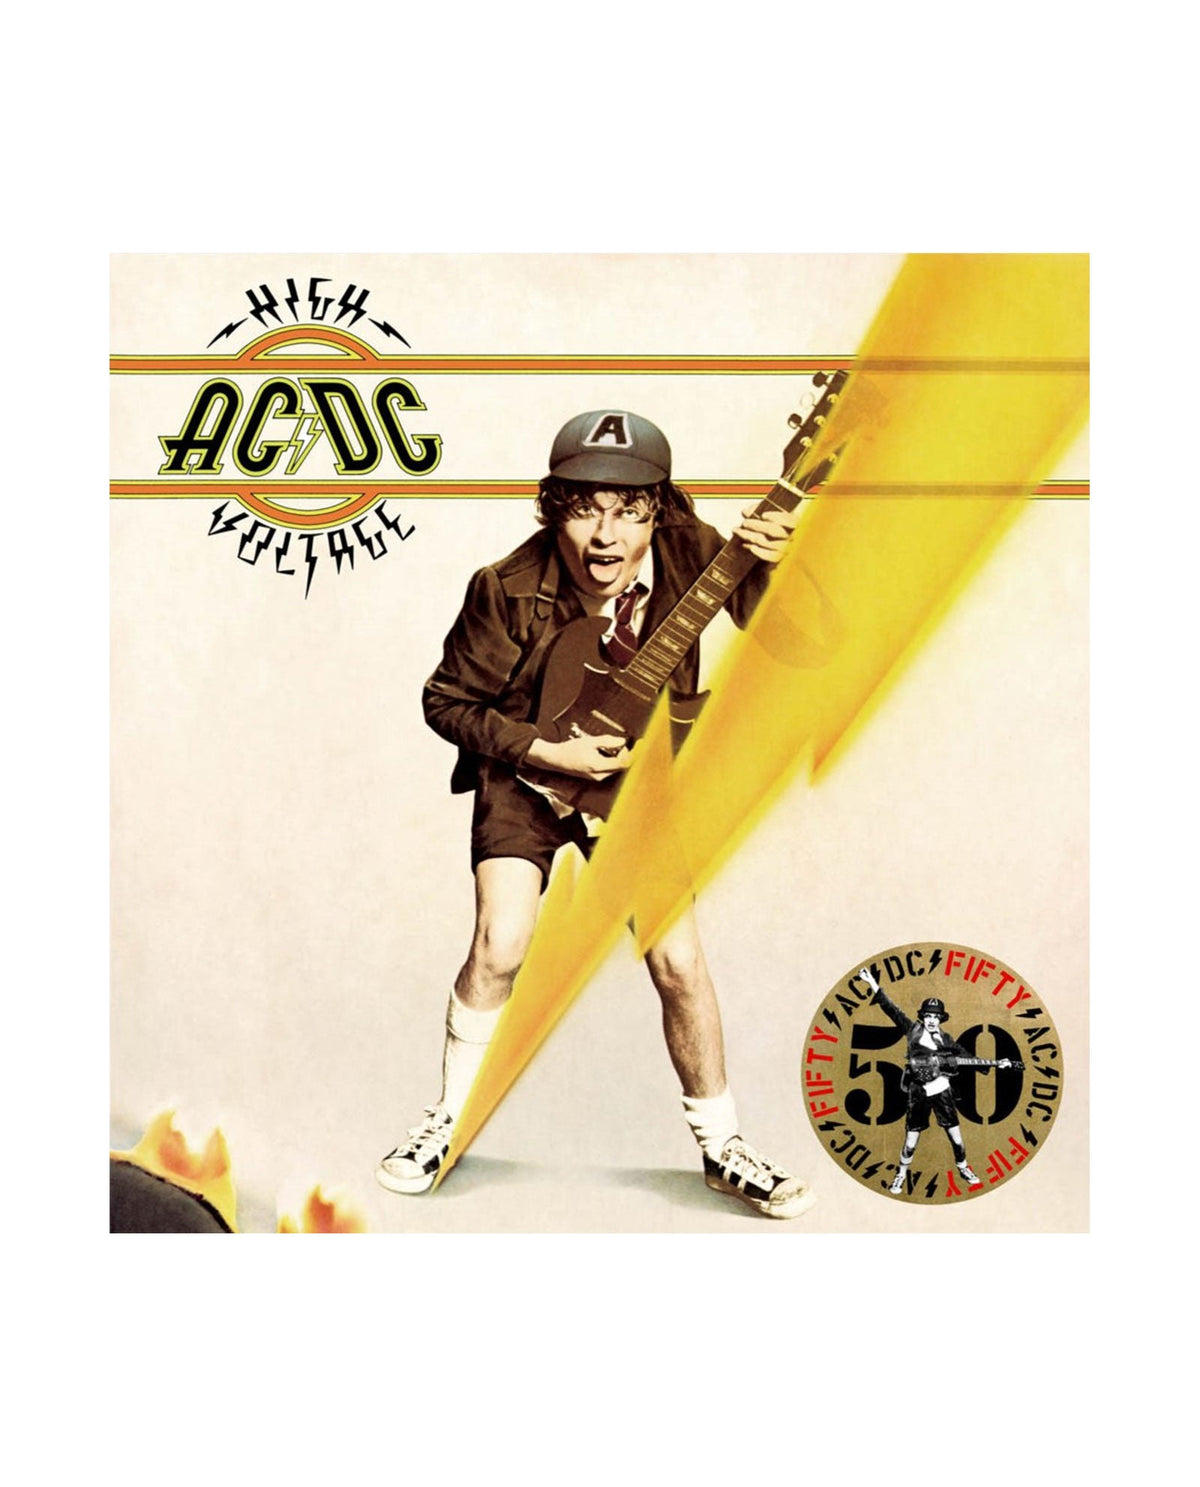 AC/DC - LP Vinilo Dorado "High Voltage" Ed. 50 aniversario - D2fy · Rocktud - Rocktud